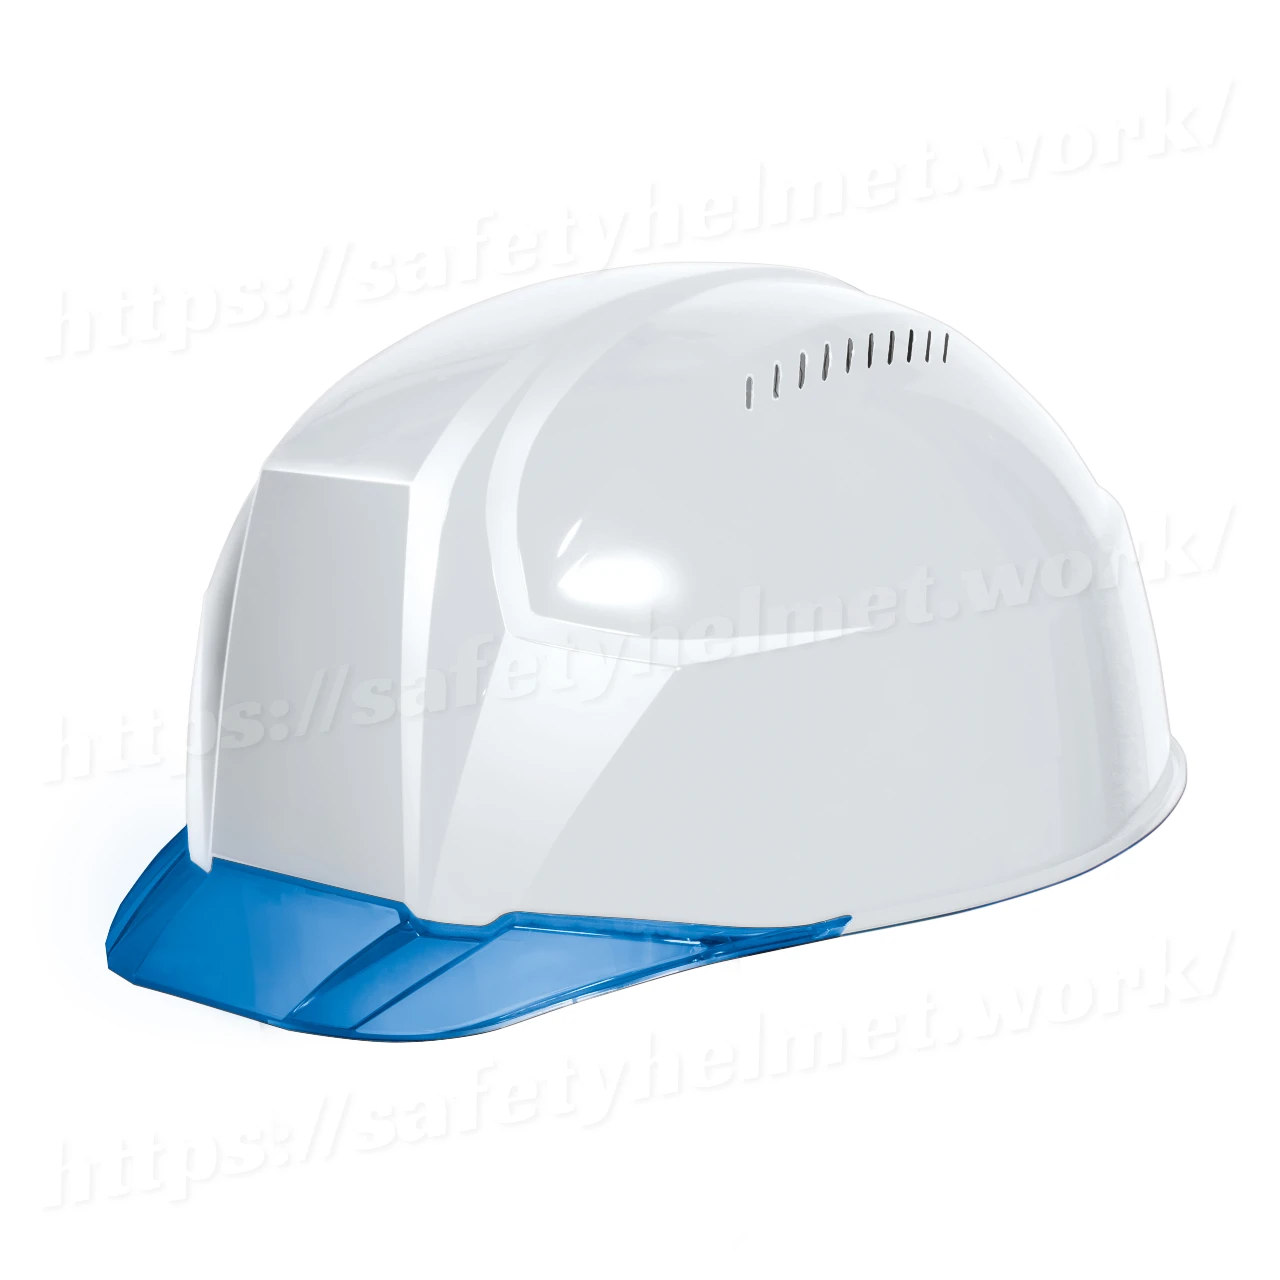 dic-lightest-helmet-keijin-clearvisor-aa23cv-white-blue